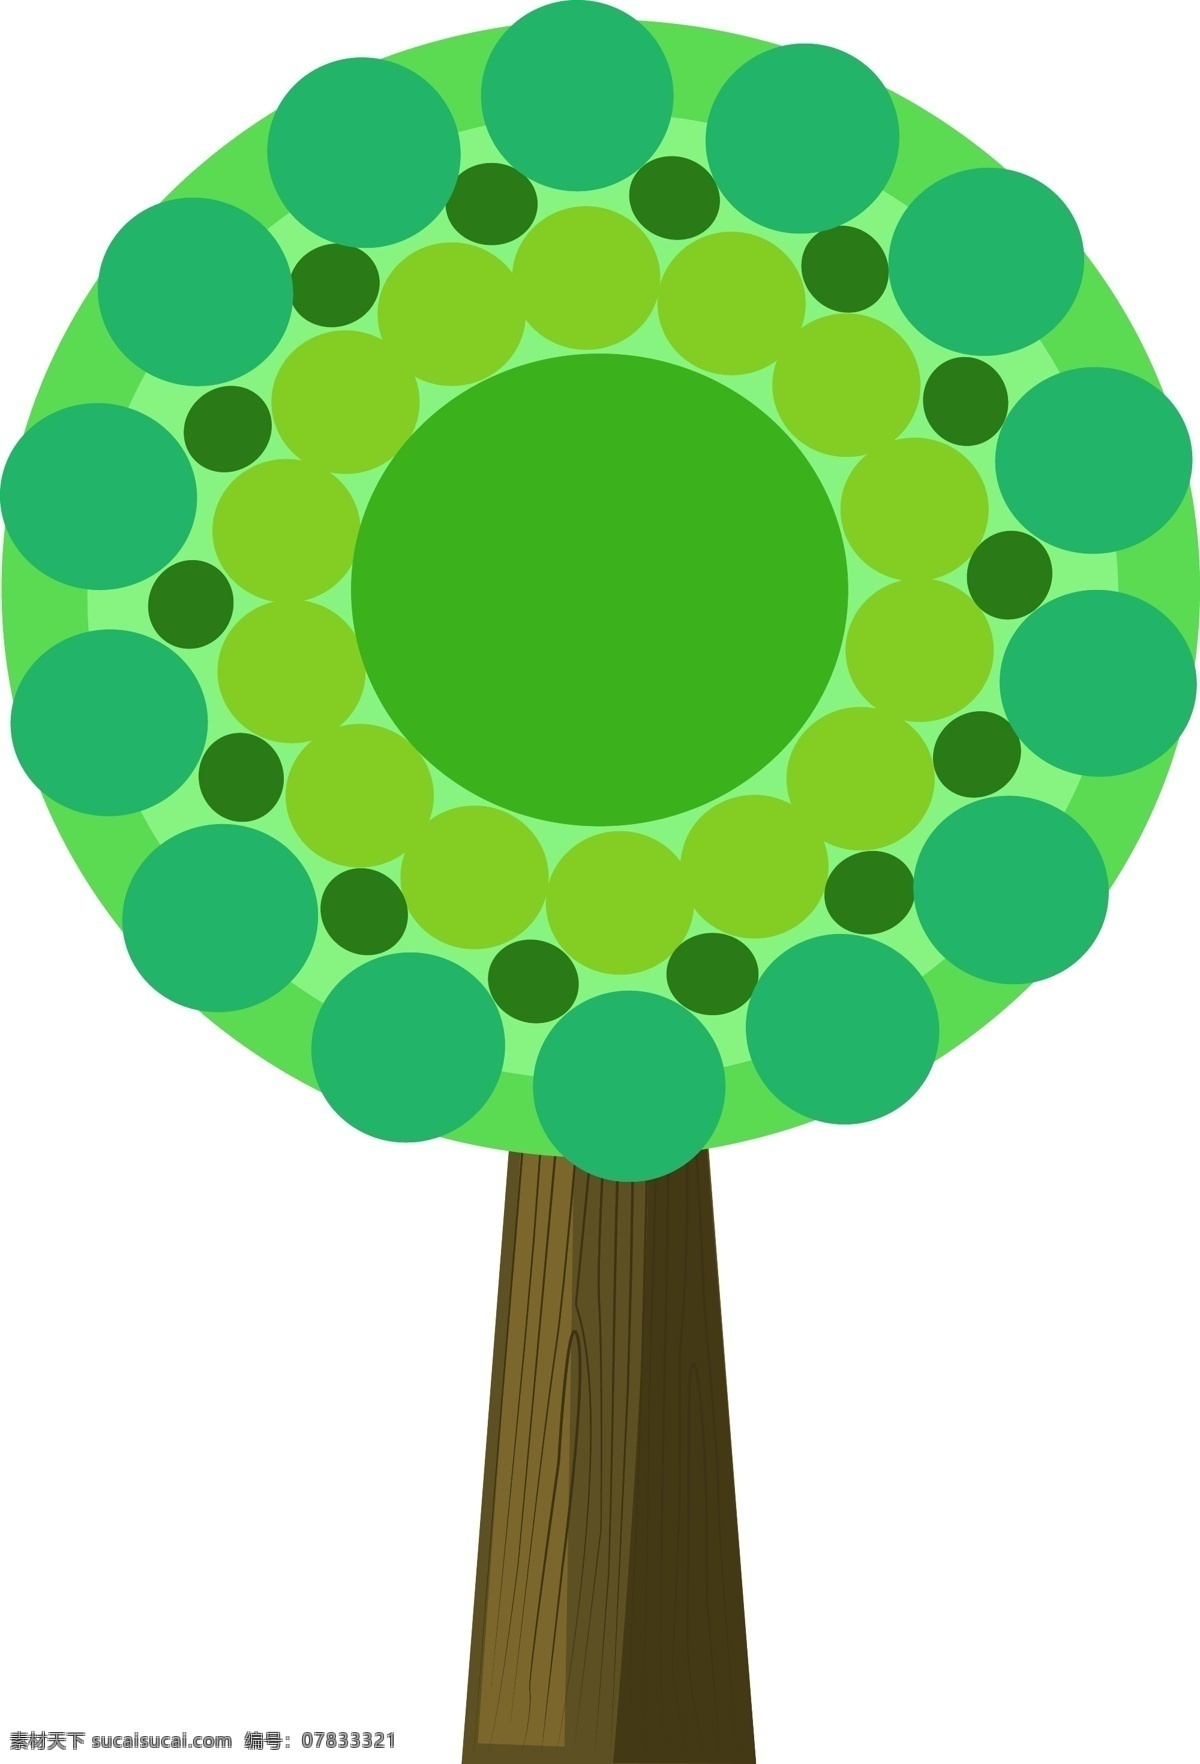 创意 绿色 大树 插画 树木 创意植物 卡通植物插画 绿色植物 绿色的树叶 茂盛的树叶 圆形树叶